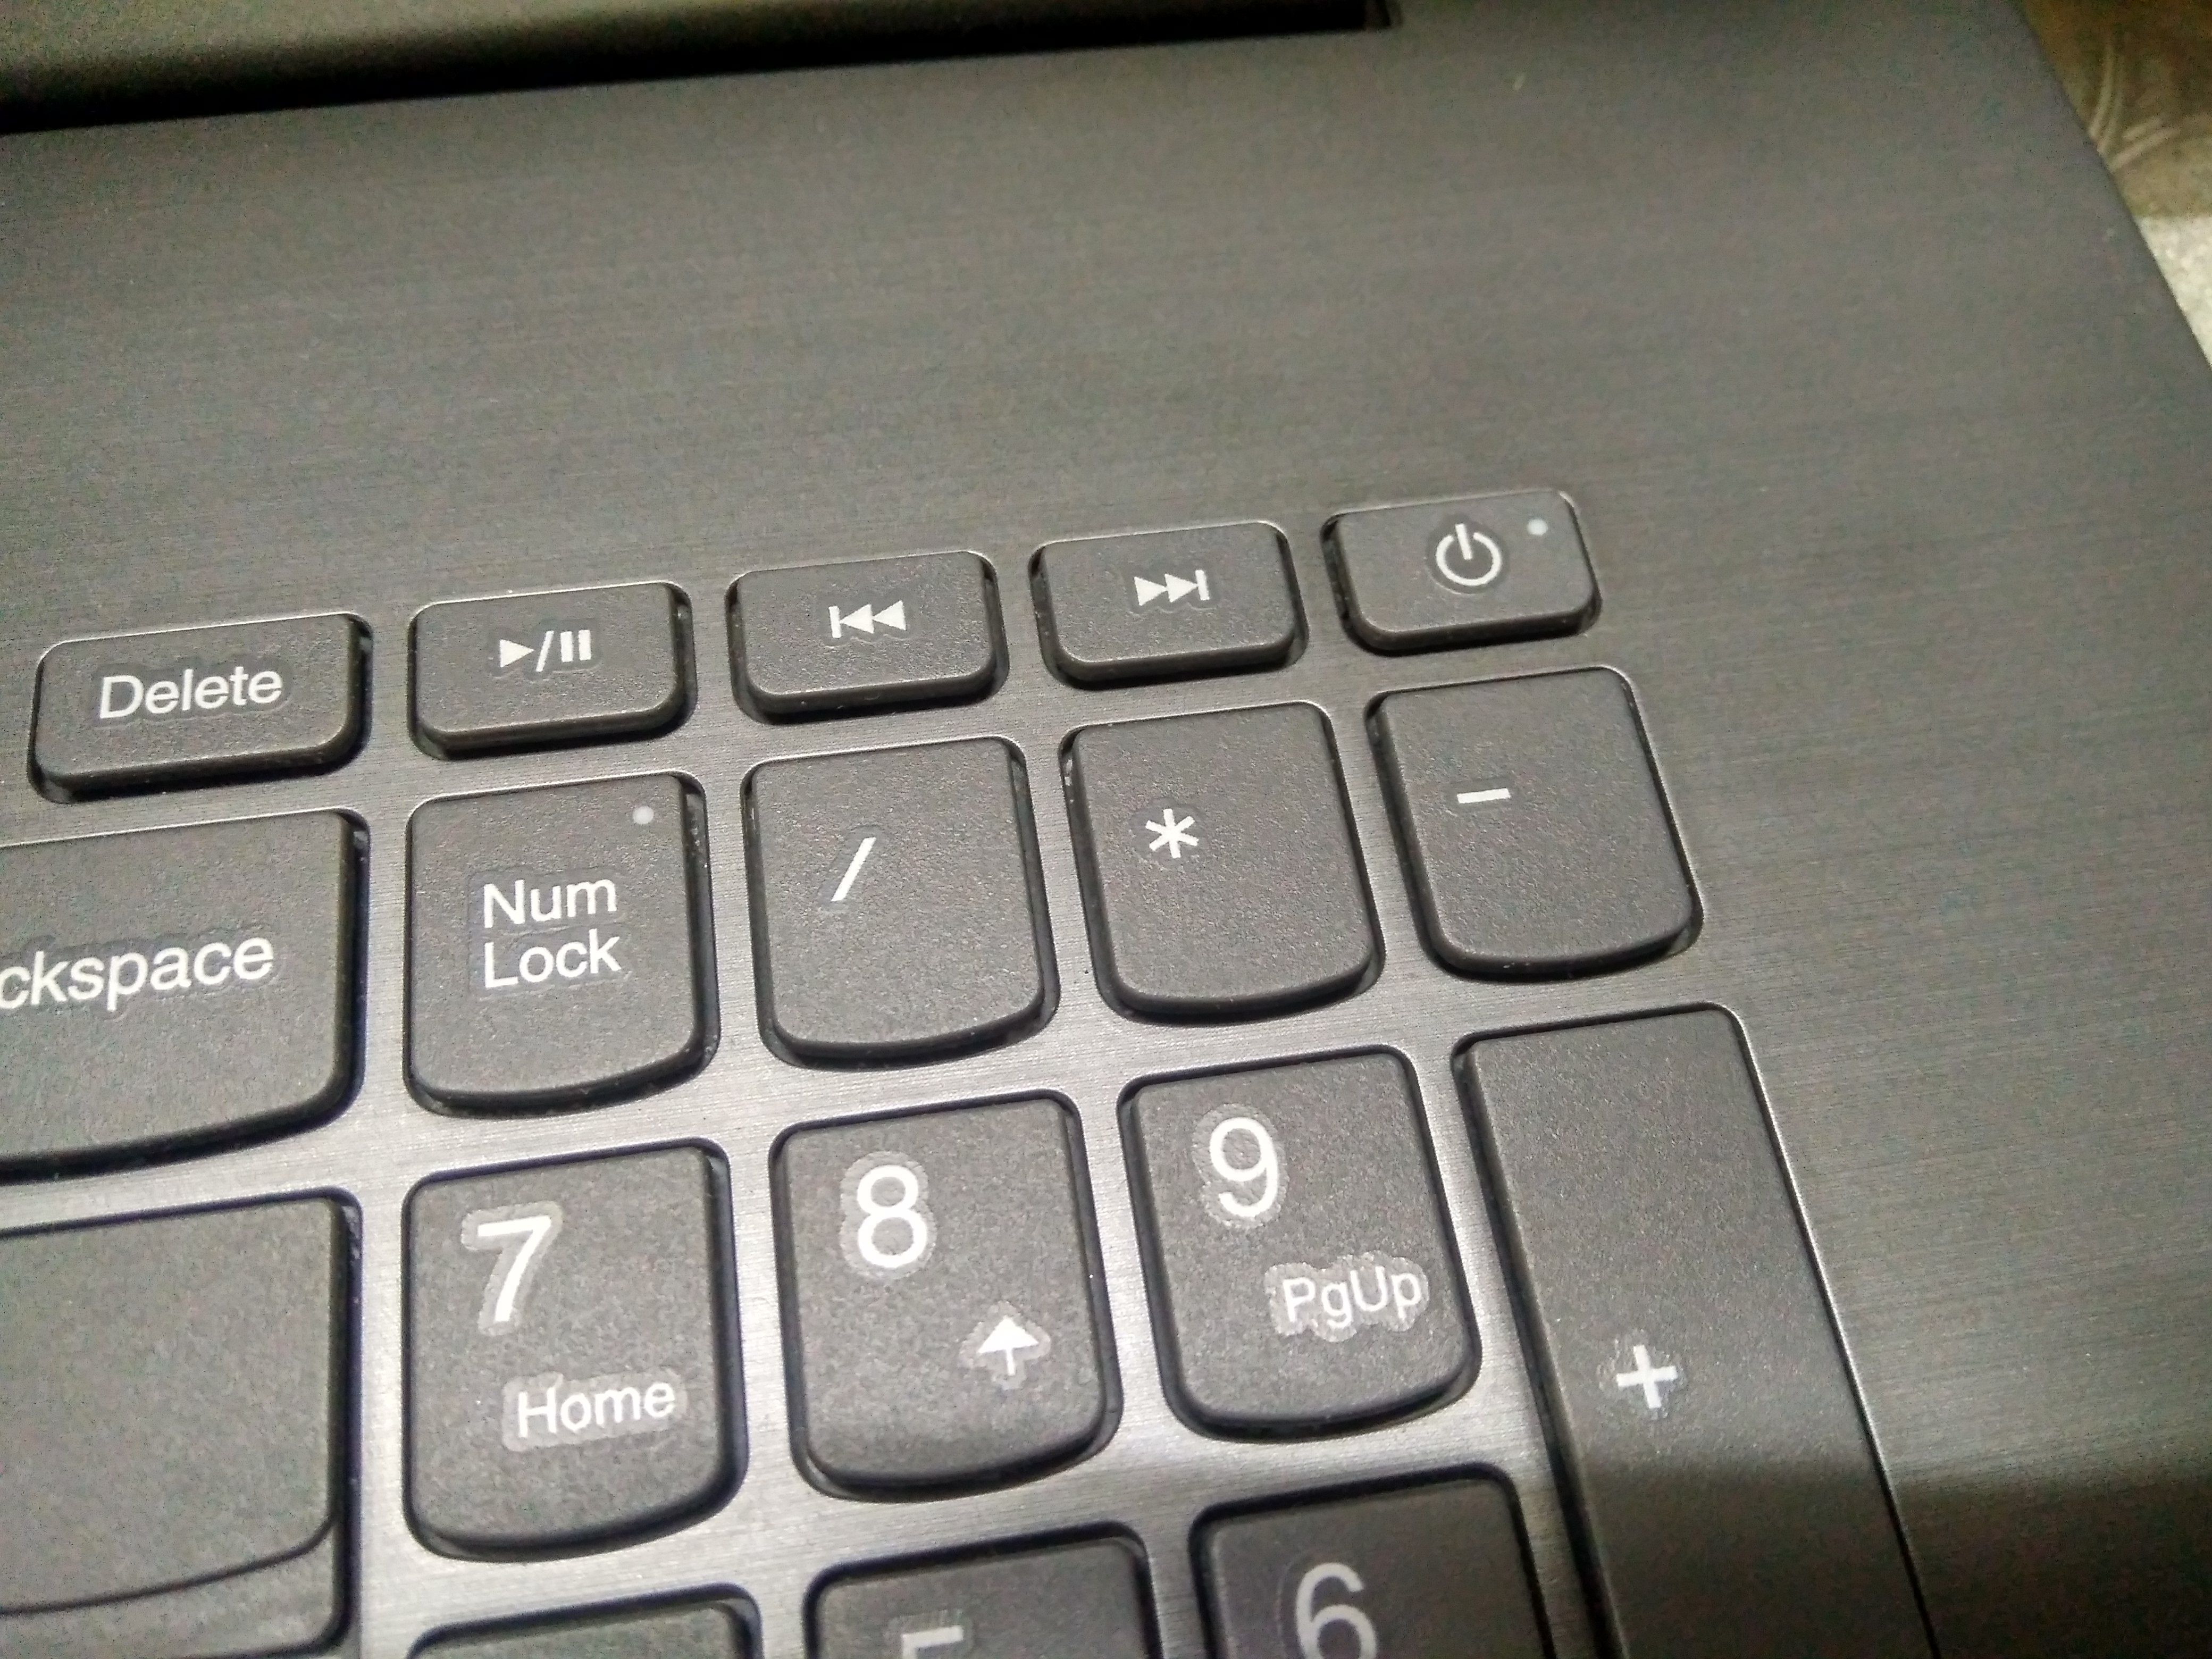 lenovo laptop keyboard light not working